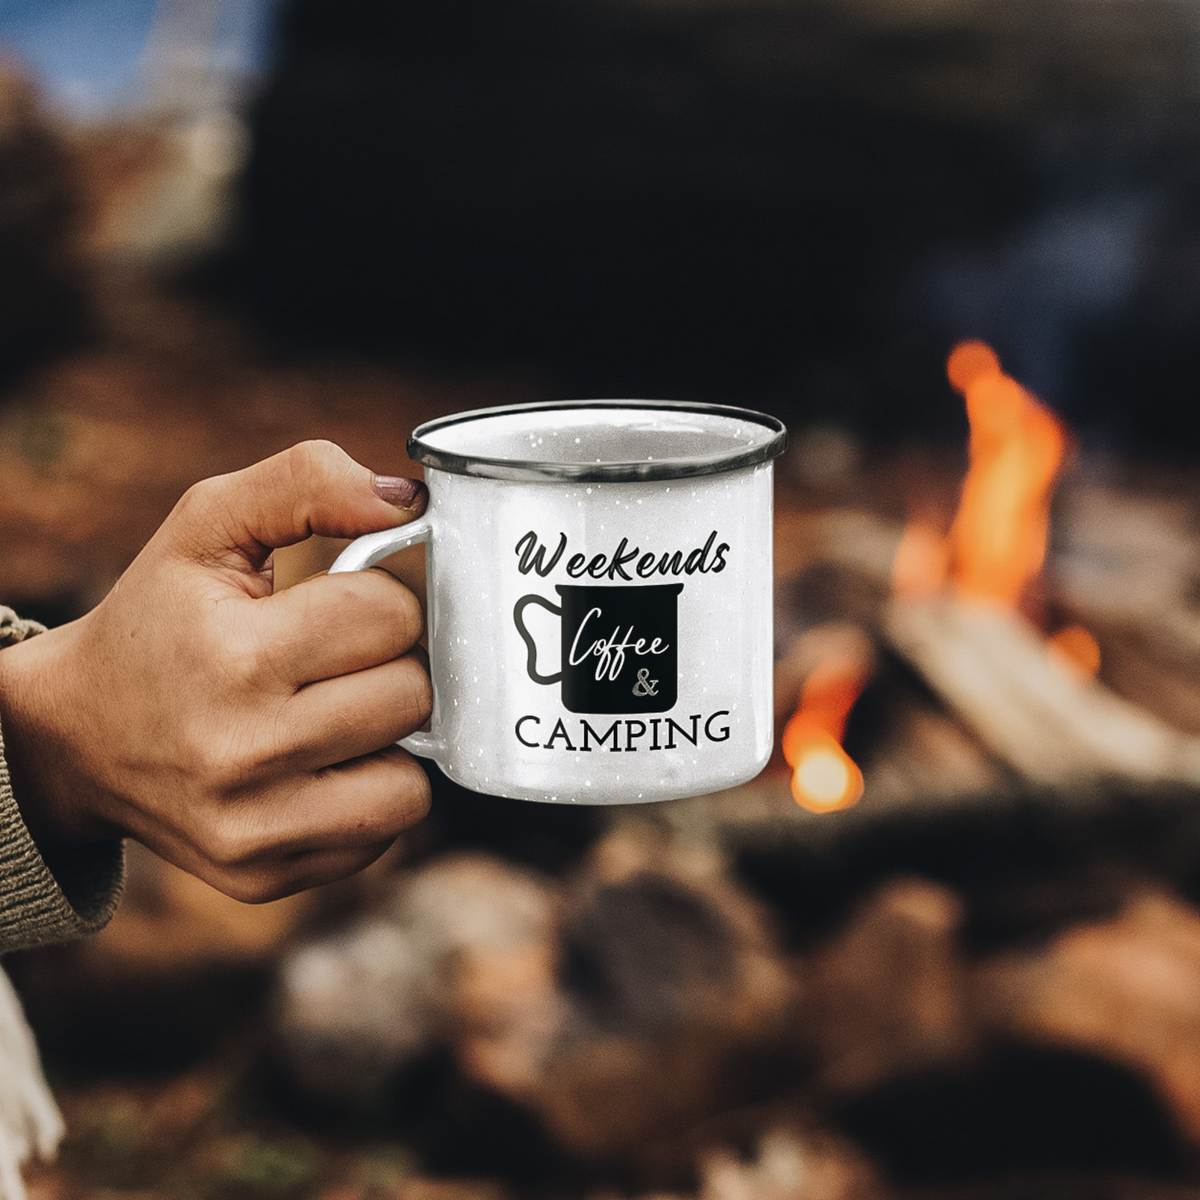 Weekends, Coffee & Camping White Enamel Camping Mug 12oz